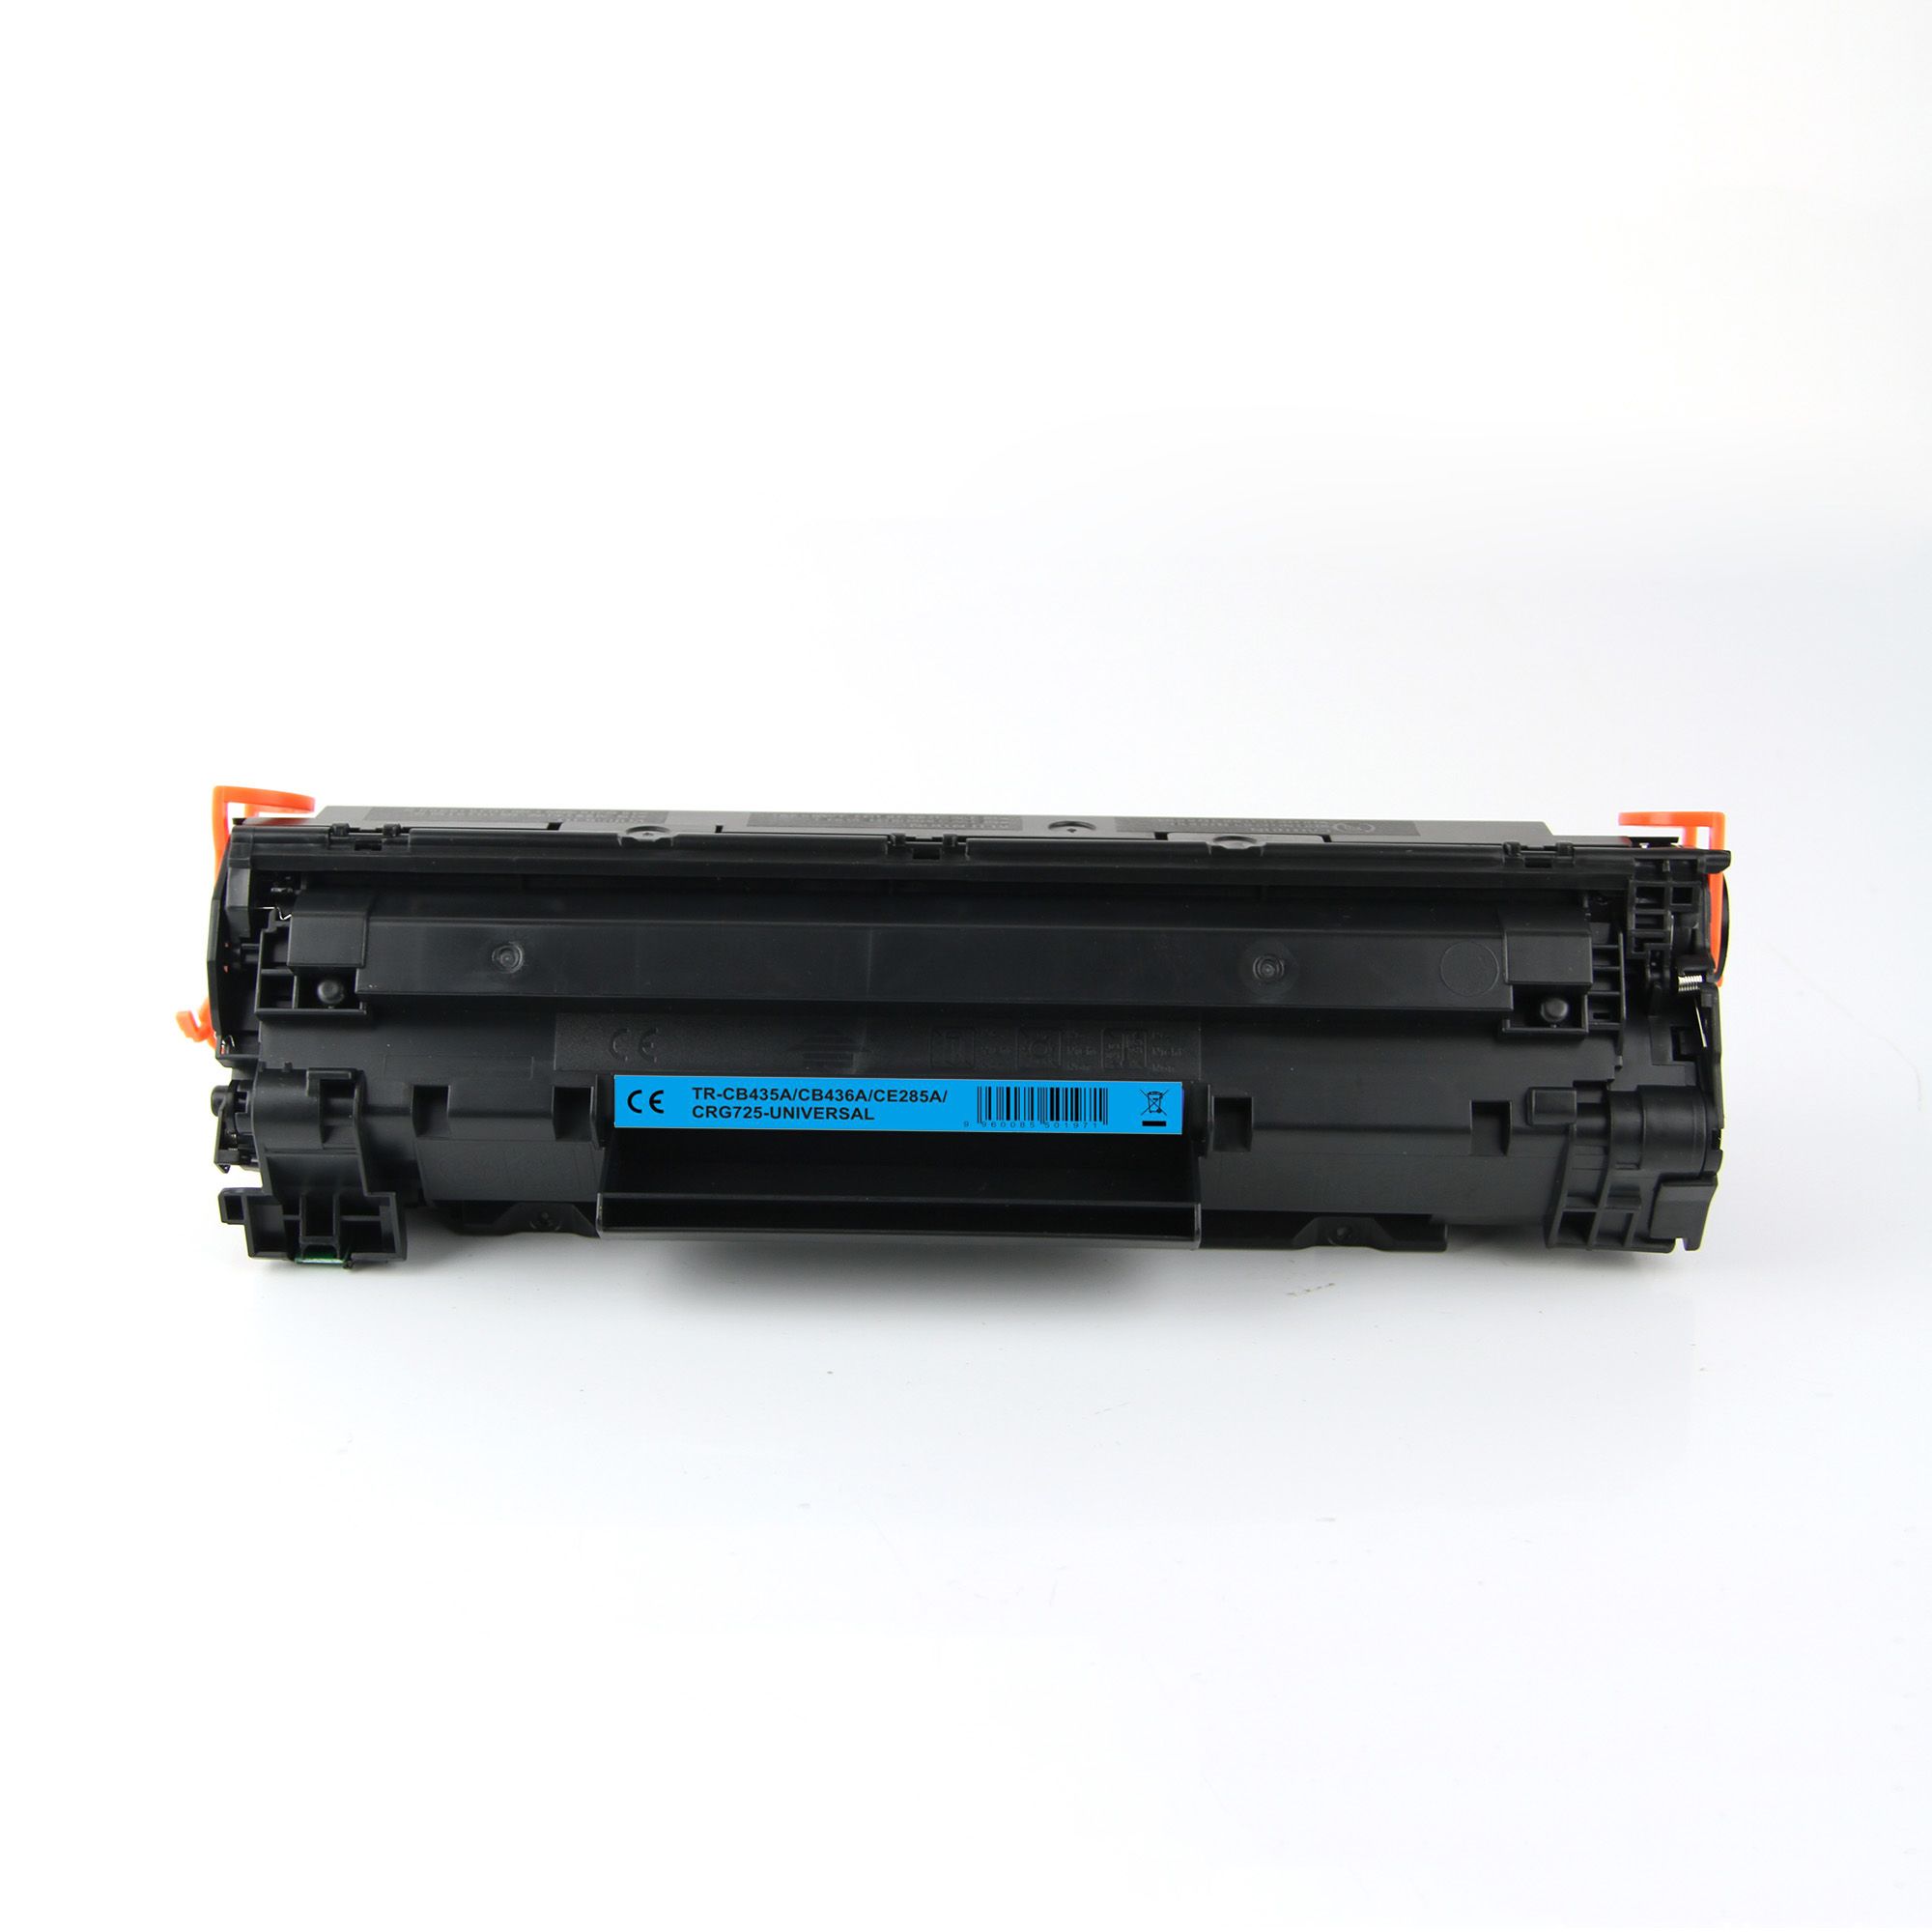 Toner WB Black, CE285A/CRG725-WB, compatibil cu HP LJ P1102|M1132|M1212|Pro M1217|LBP6000|LBP6020|LBP6030|MF3010, 1.6K, incl.TV 0.8 RON, 